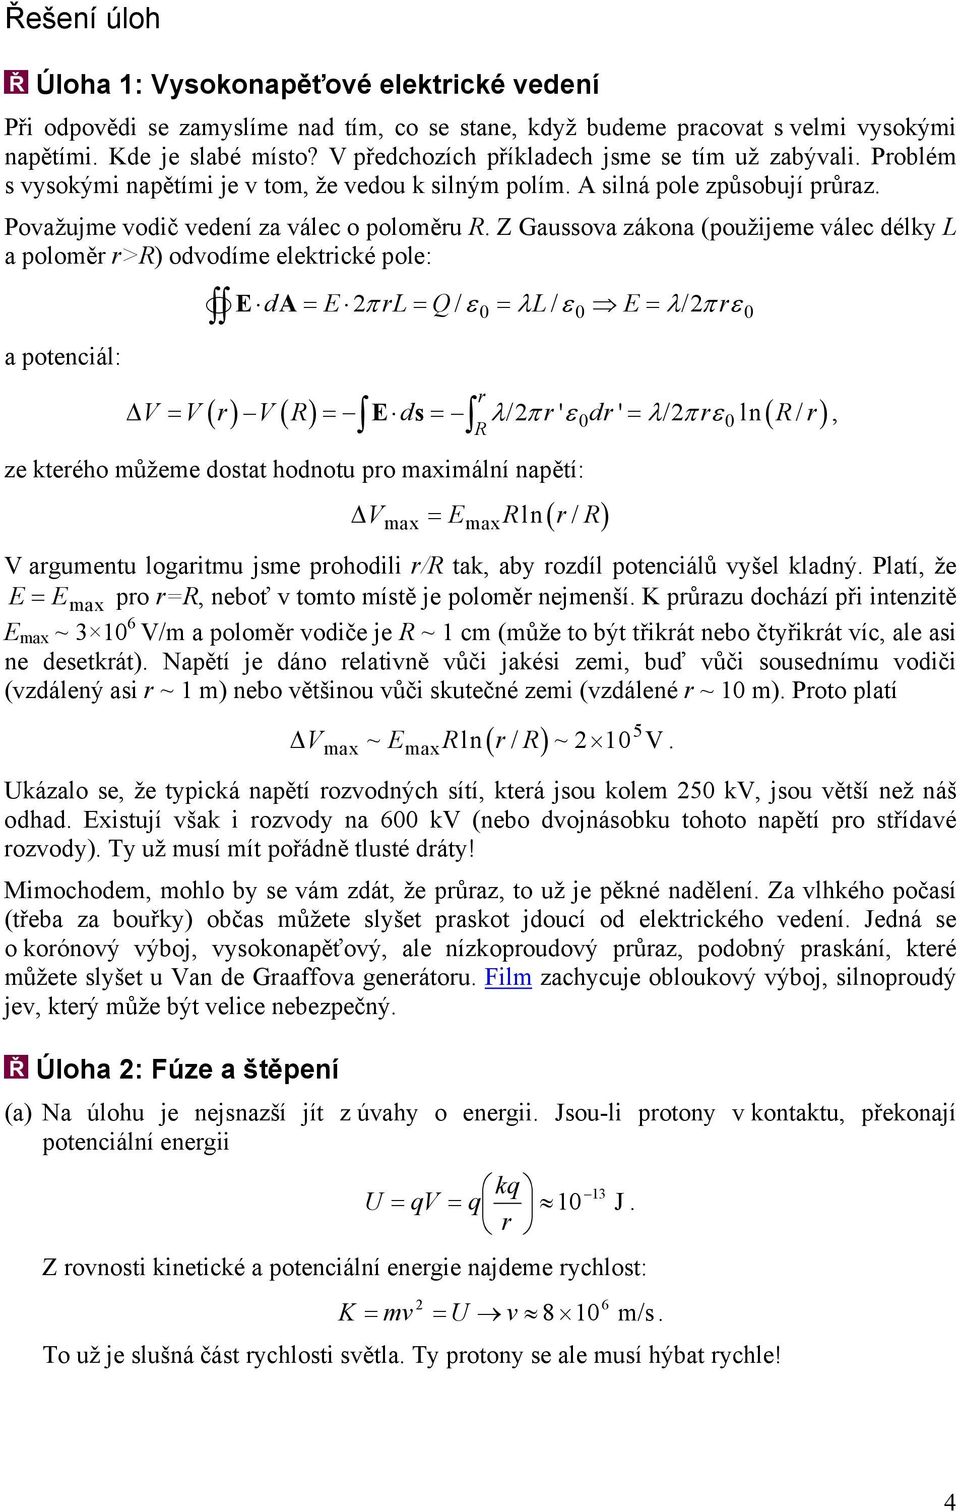 zákona (použijeme válec délky L a poloměr r>r) odvodíme elektrické pole: a potenciál: d A = π rl= Q/ ε = λl/ ε = λ/ πrε r R ( ) ( ) λ π ' ε ' λ π ε ln ( / ) V = V r V R = ds = / r dr = / r R r, ze